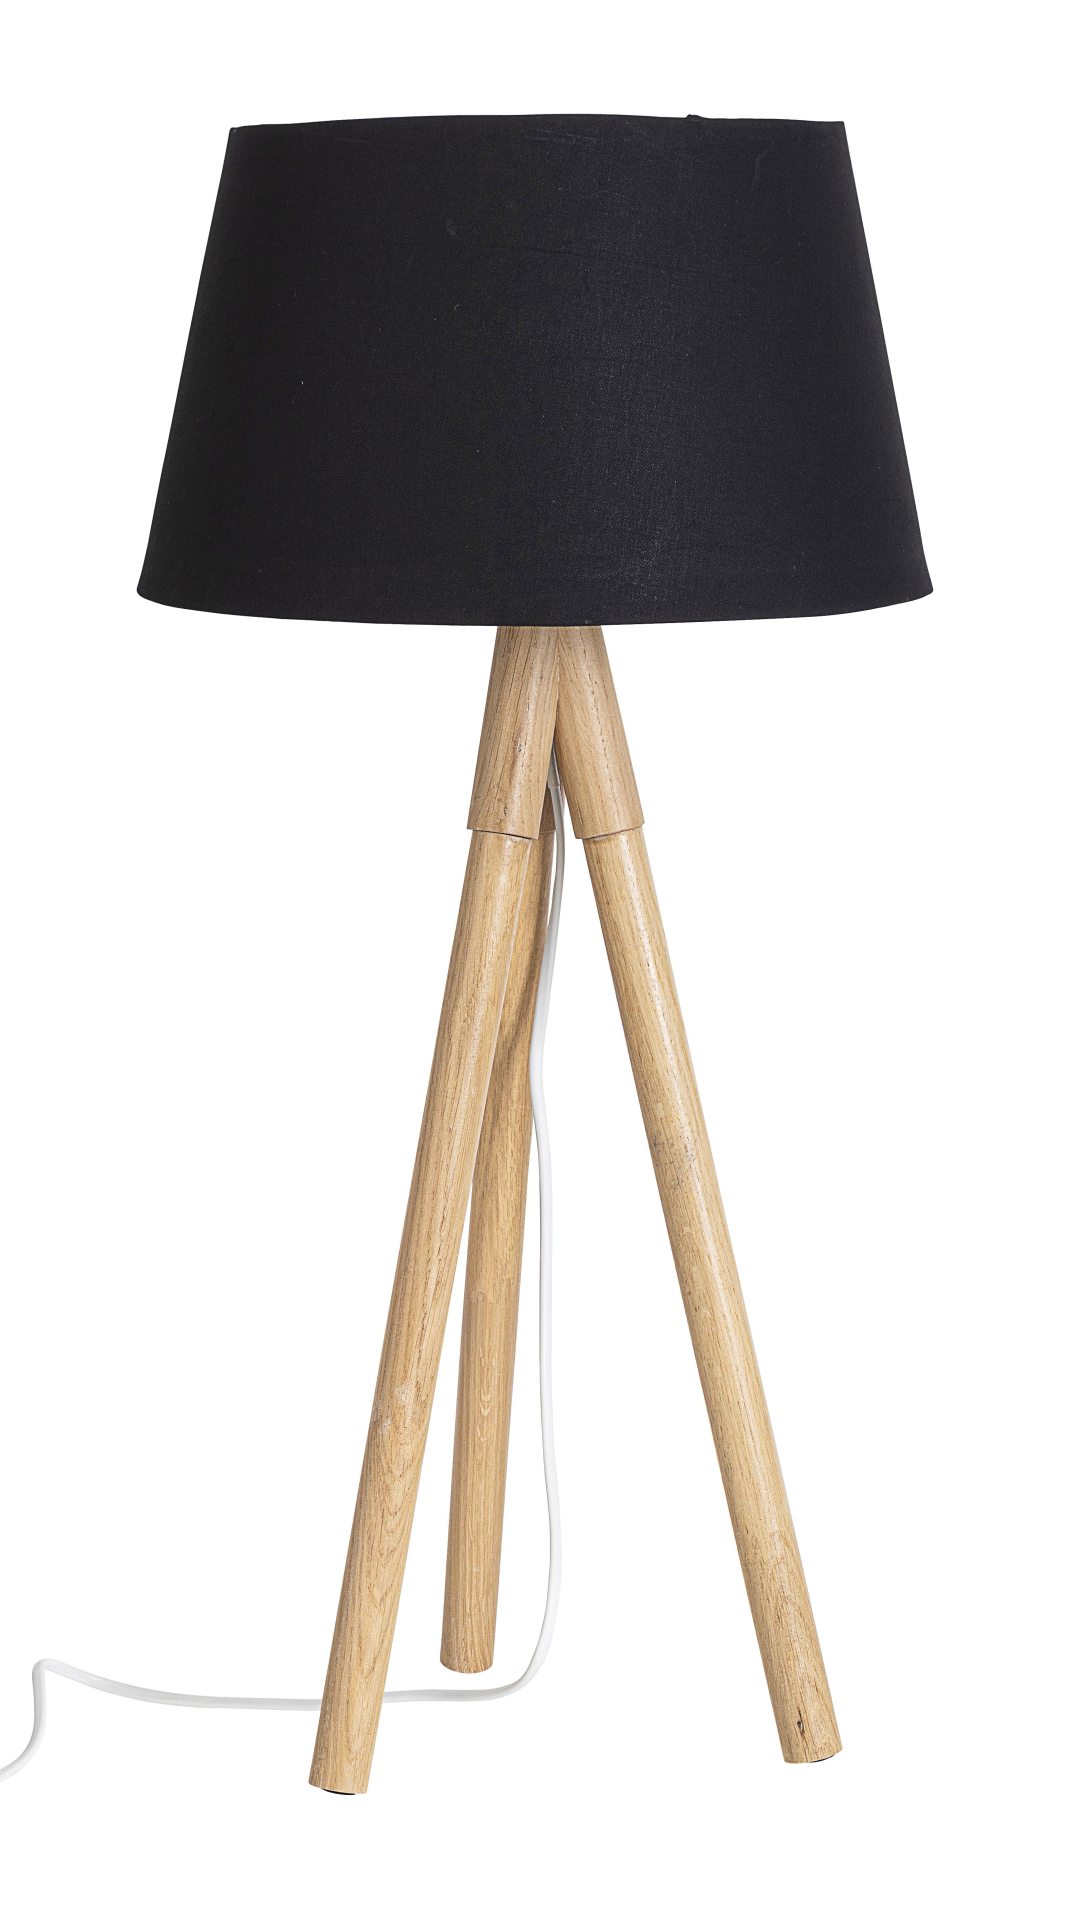 Die Tischleuchte Wallas überzeugt mit ihrem klassischen Design. Gefertigt wurde sie aus Tannenholz, welches einen schwarzen Farbton besitzt. Der Lampenschirm ist aus Terital und hat eine weiße Farbe. Die Lampe besitzt eine Höhe von 69 cm.